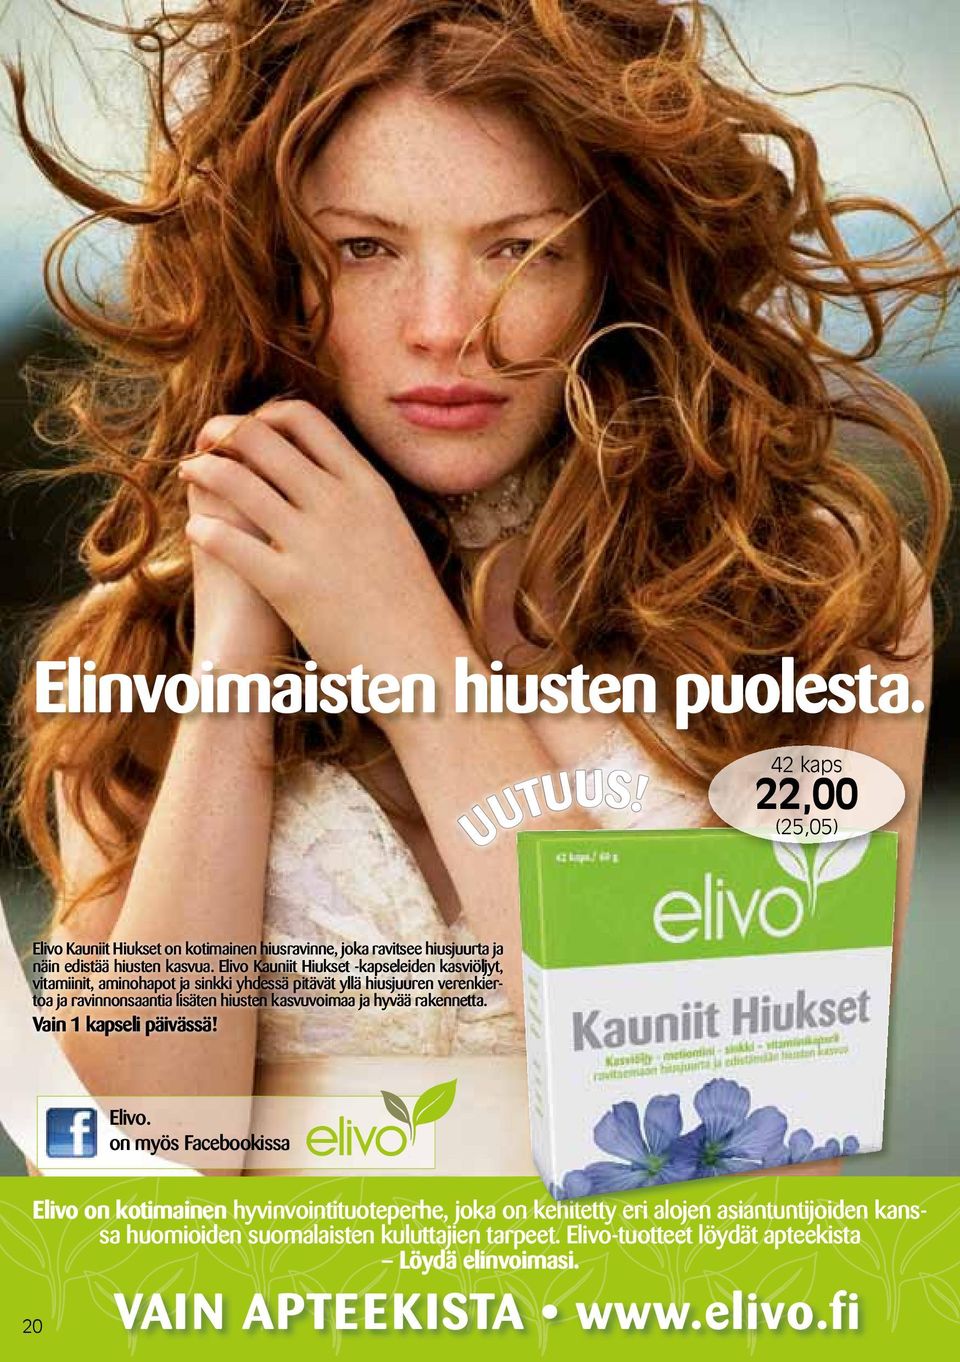 Elivo Kauniit Hiukset -kapseleiden kasviöljyt, vitamiinit, aminohapot ja sinkki yhdessä pitävät yllä hiusjuuren verenkiertoa ja ravinnonsaantia lisäten hiusten